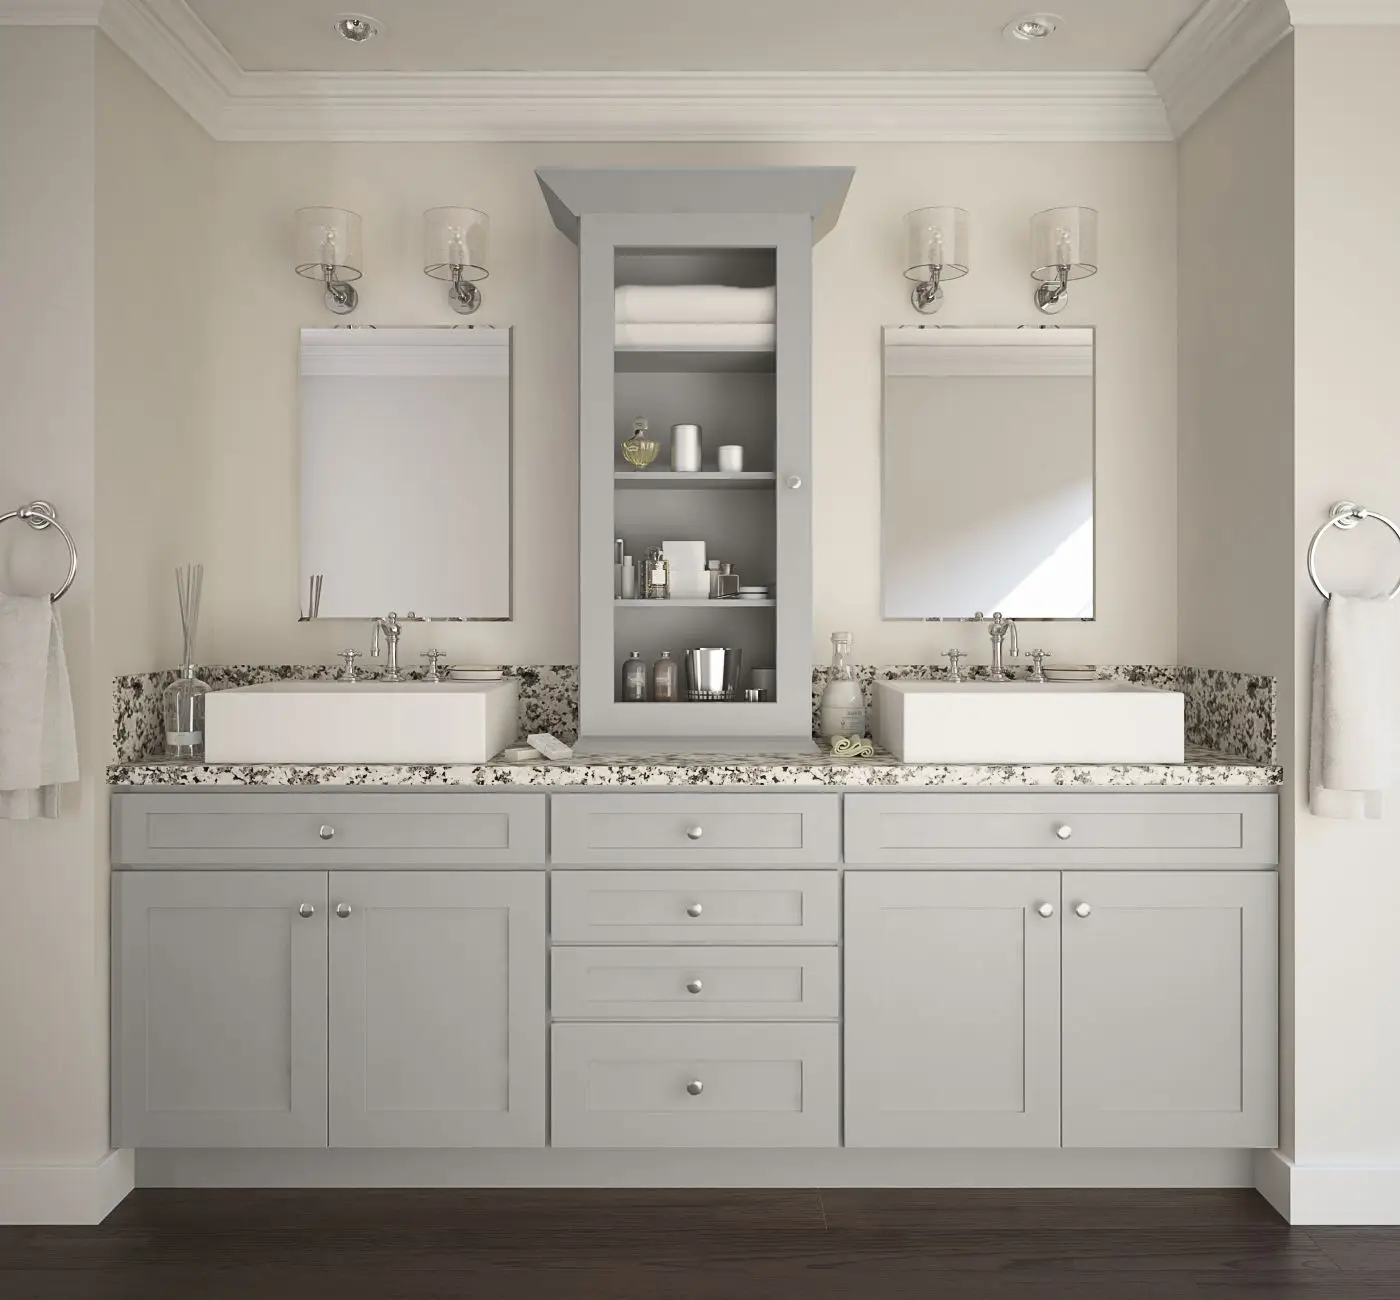 Gray Shaker Design European Modern Solid Wood Bathroom Vanity Cabinet Buy Vanity Bathroom Wood